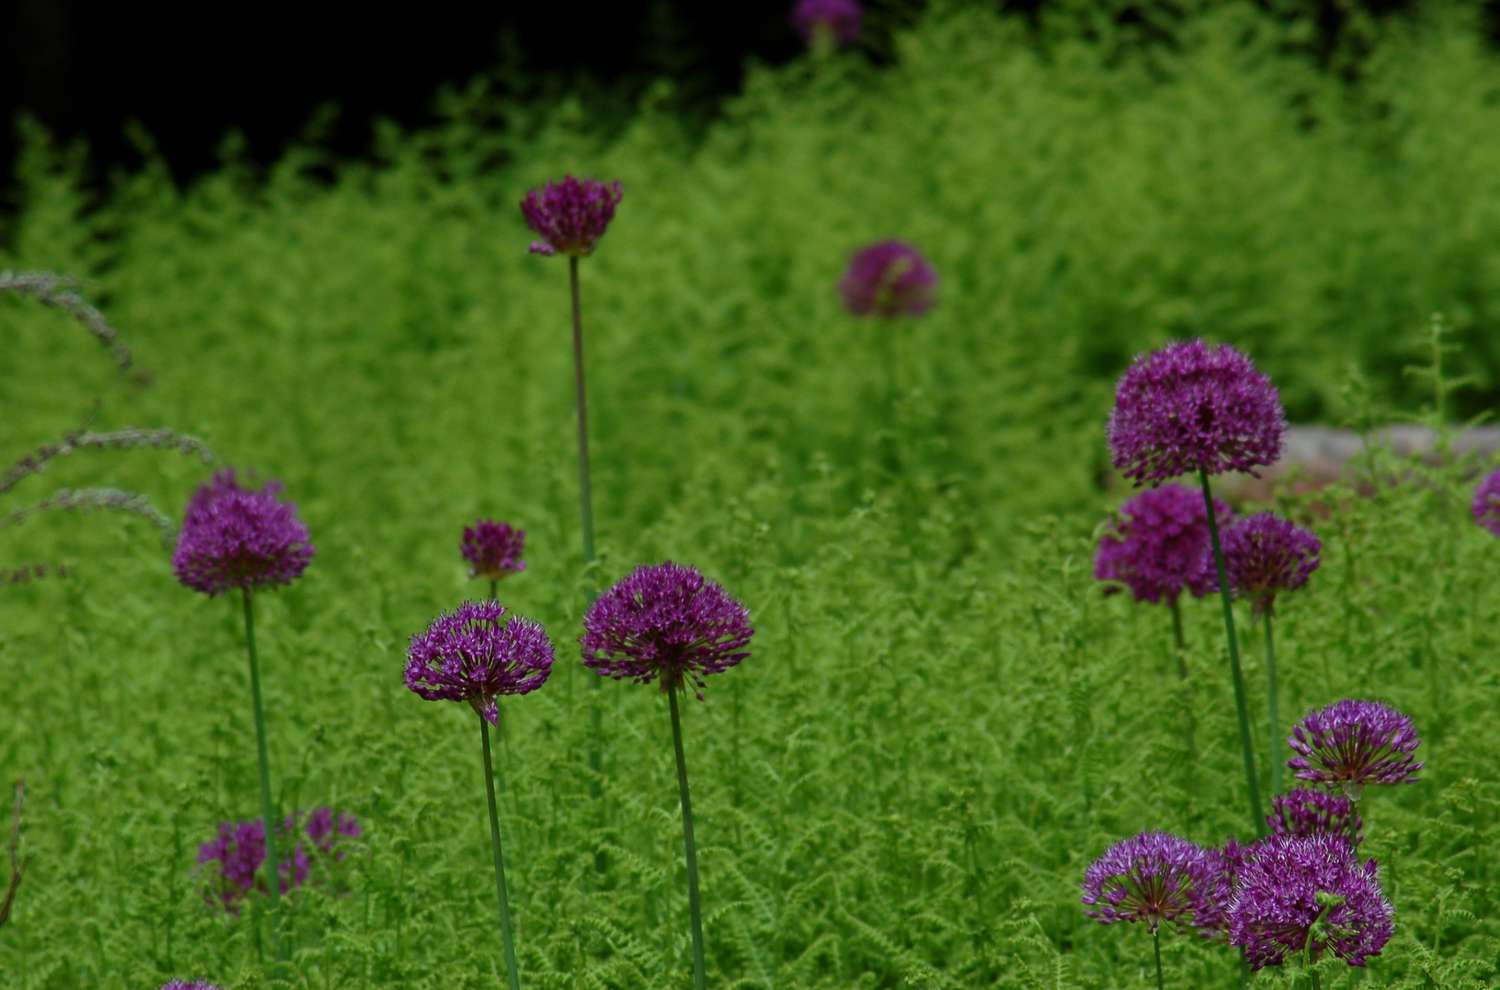 'Purple Sensation' Allium mit dunkelvioletten Blüten